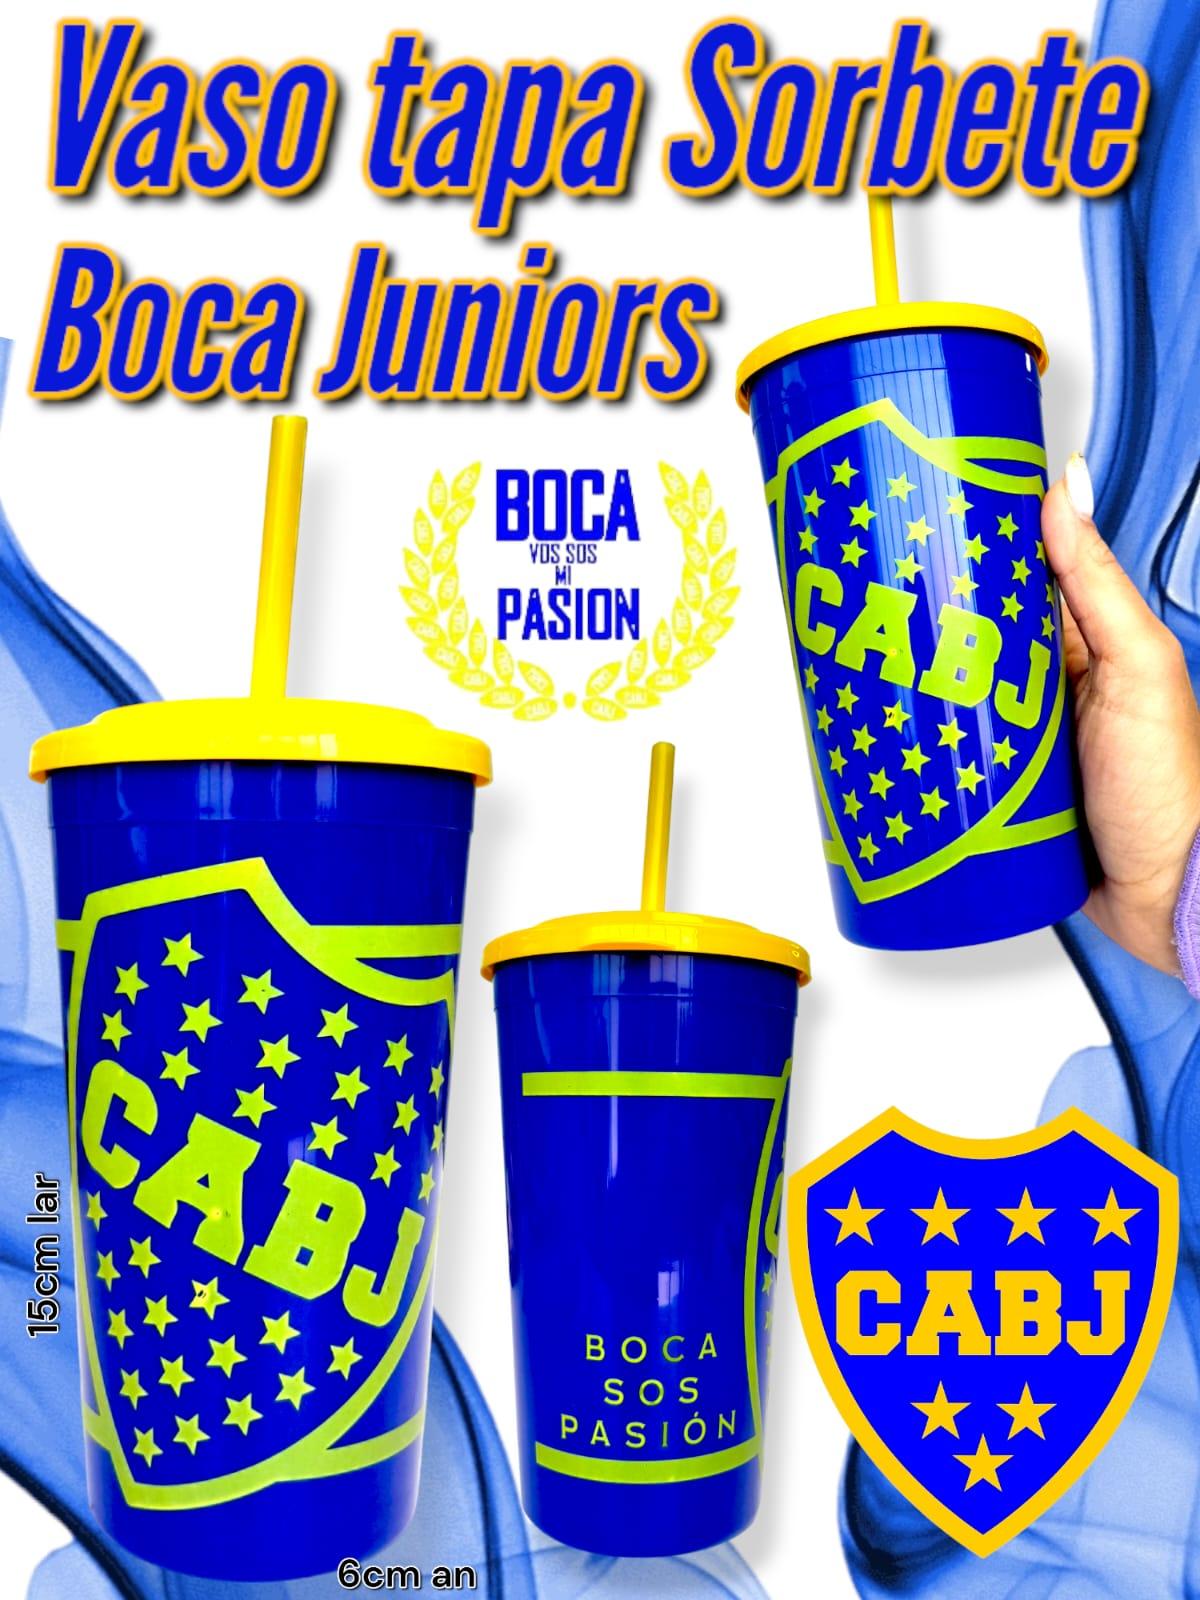 Vaso Tapa Sorbete Boca Juniors 